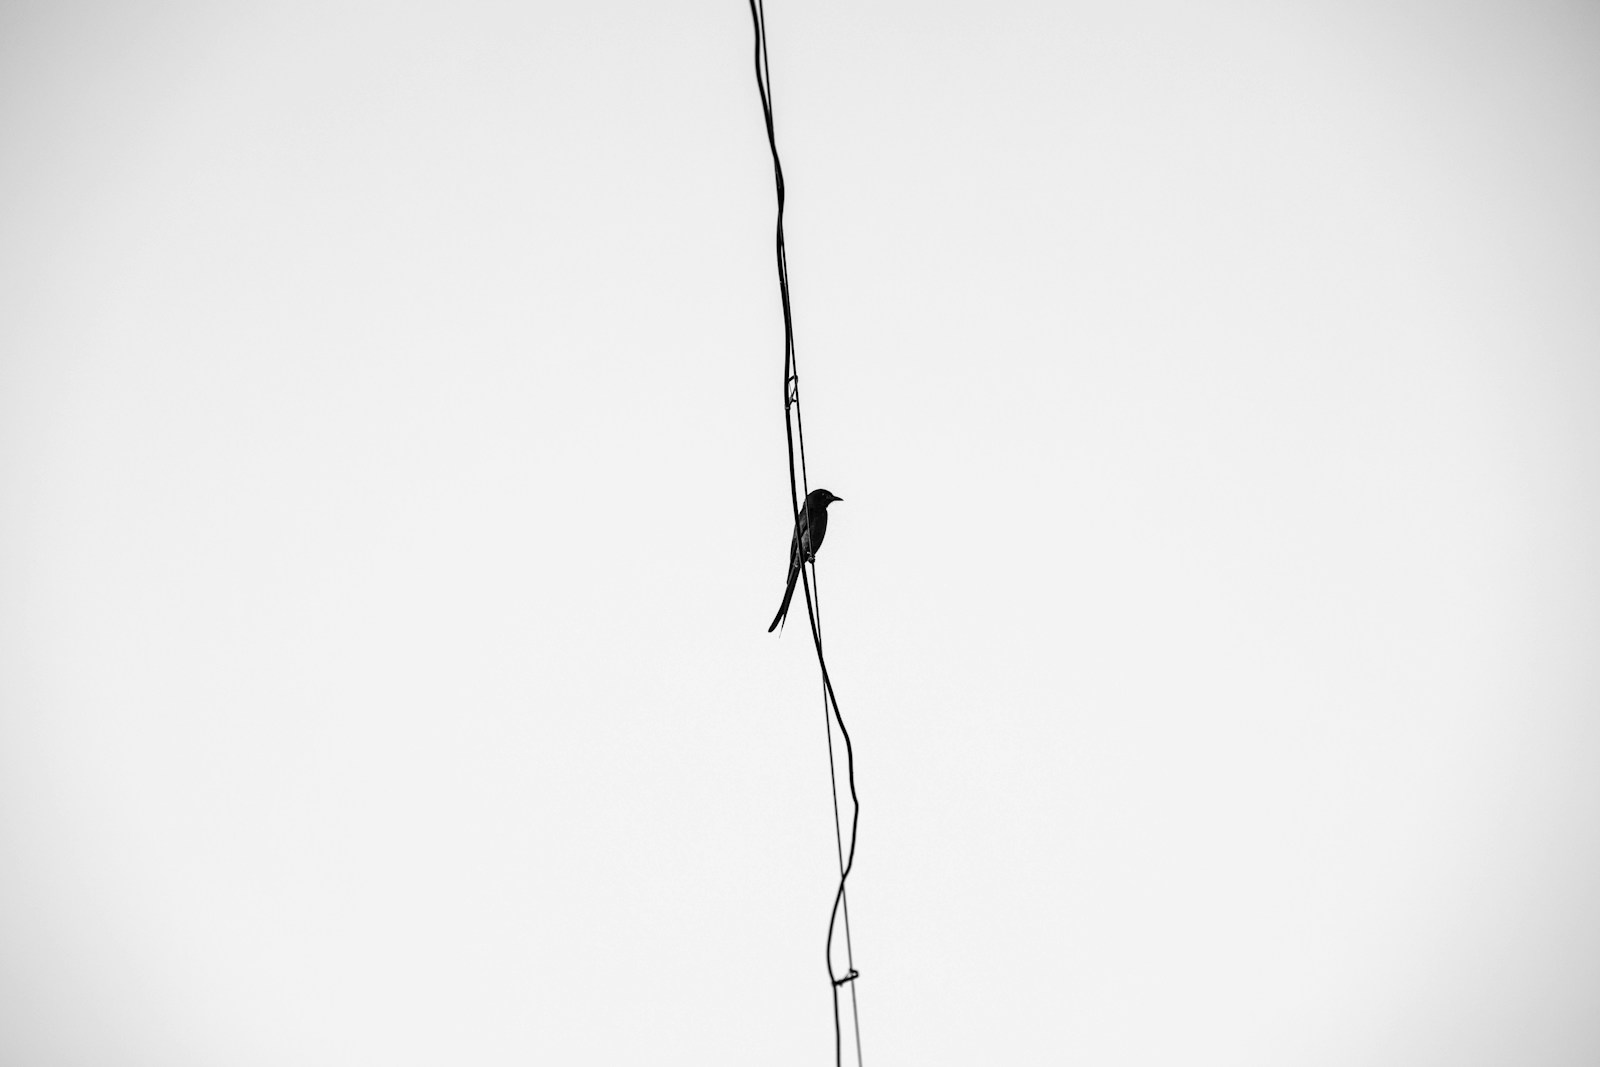 black bird on black wire